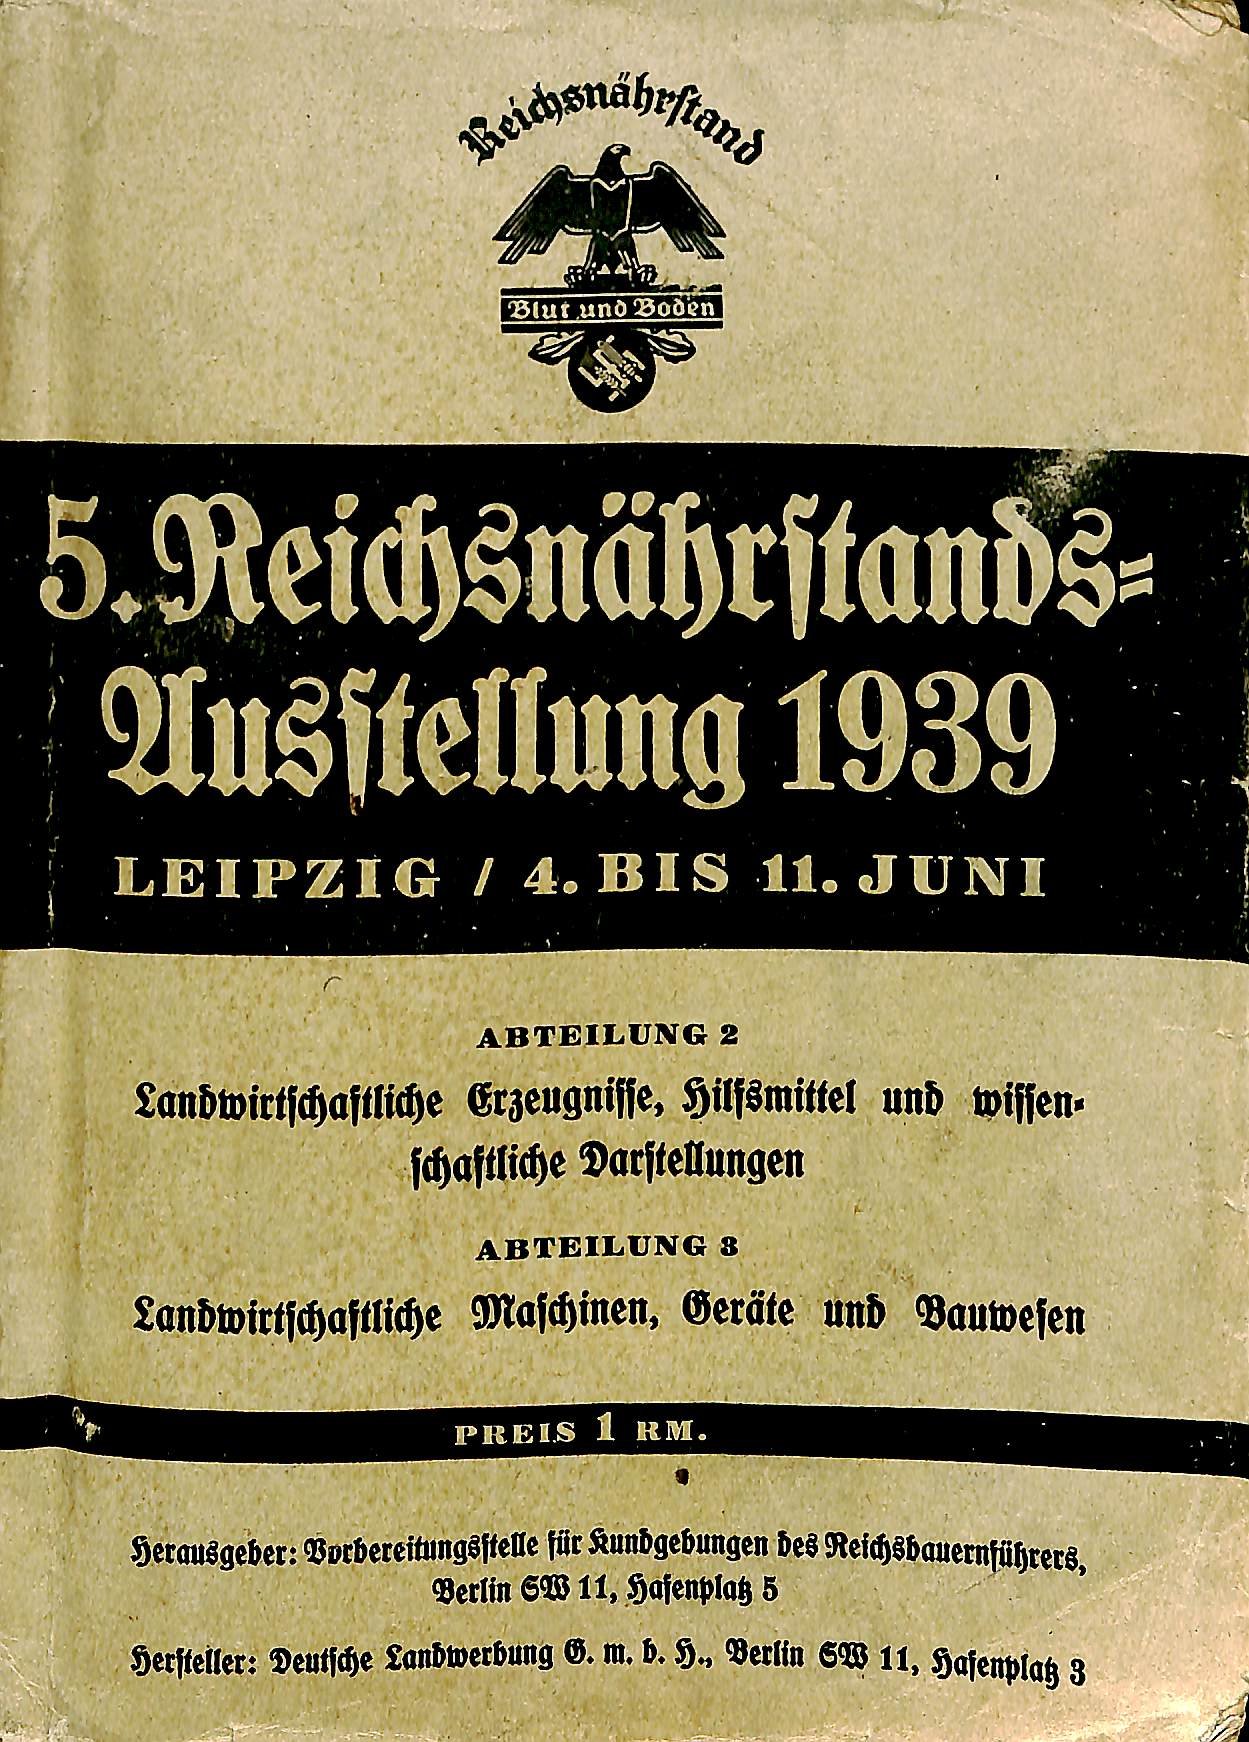 5. Reichsnährstands-Ausstellung 1939 Leipzig (Kreismuseum Syke CC BY-NC-SA)